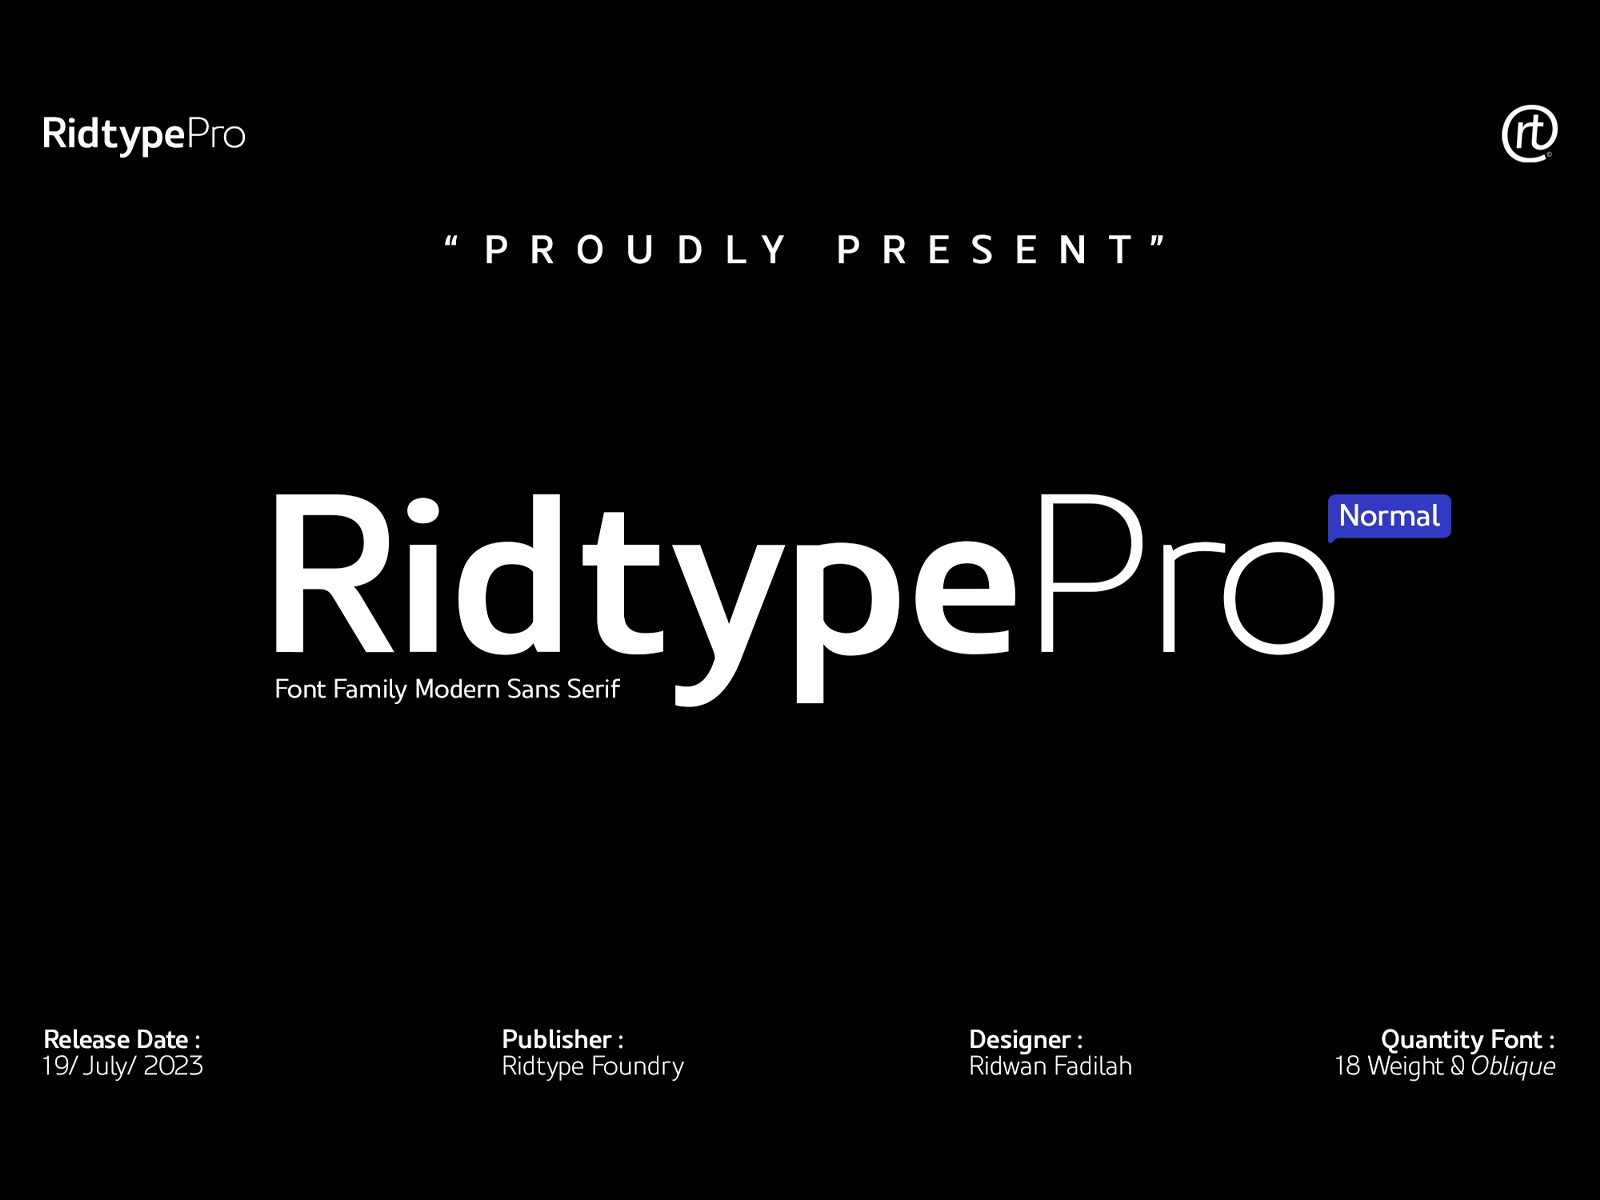 高质量现代品牌设计海报杂志排版无衬线英文字体 Ridtype Pro Font Family 设计素材 第1张